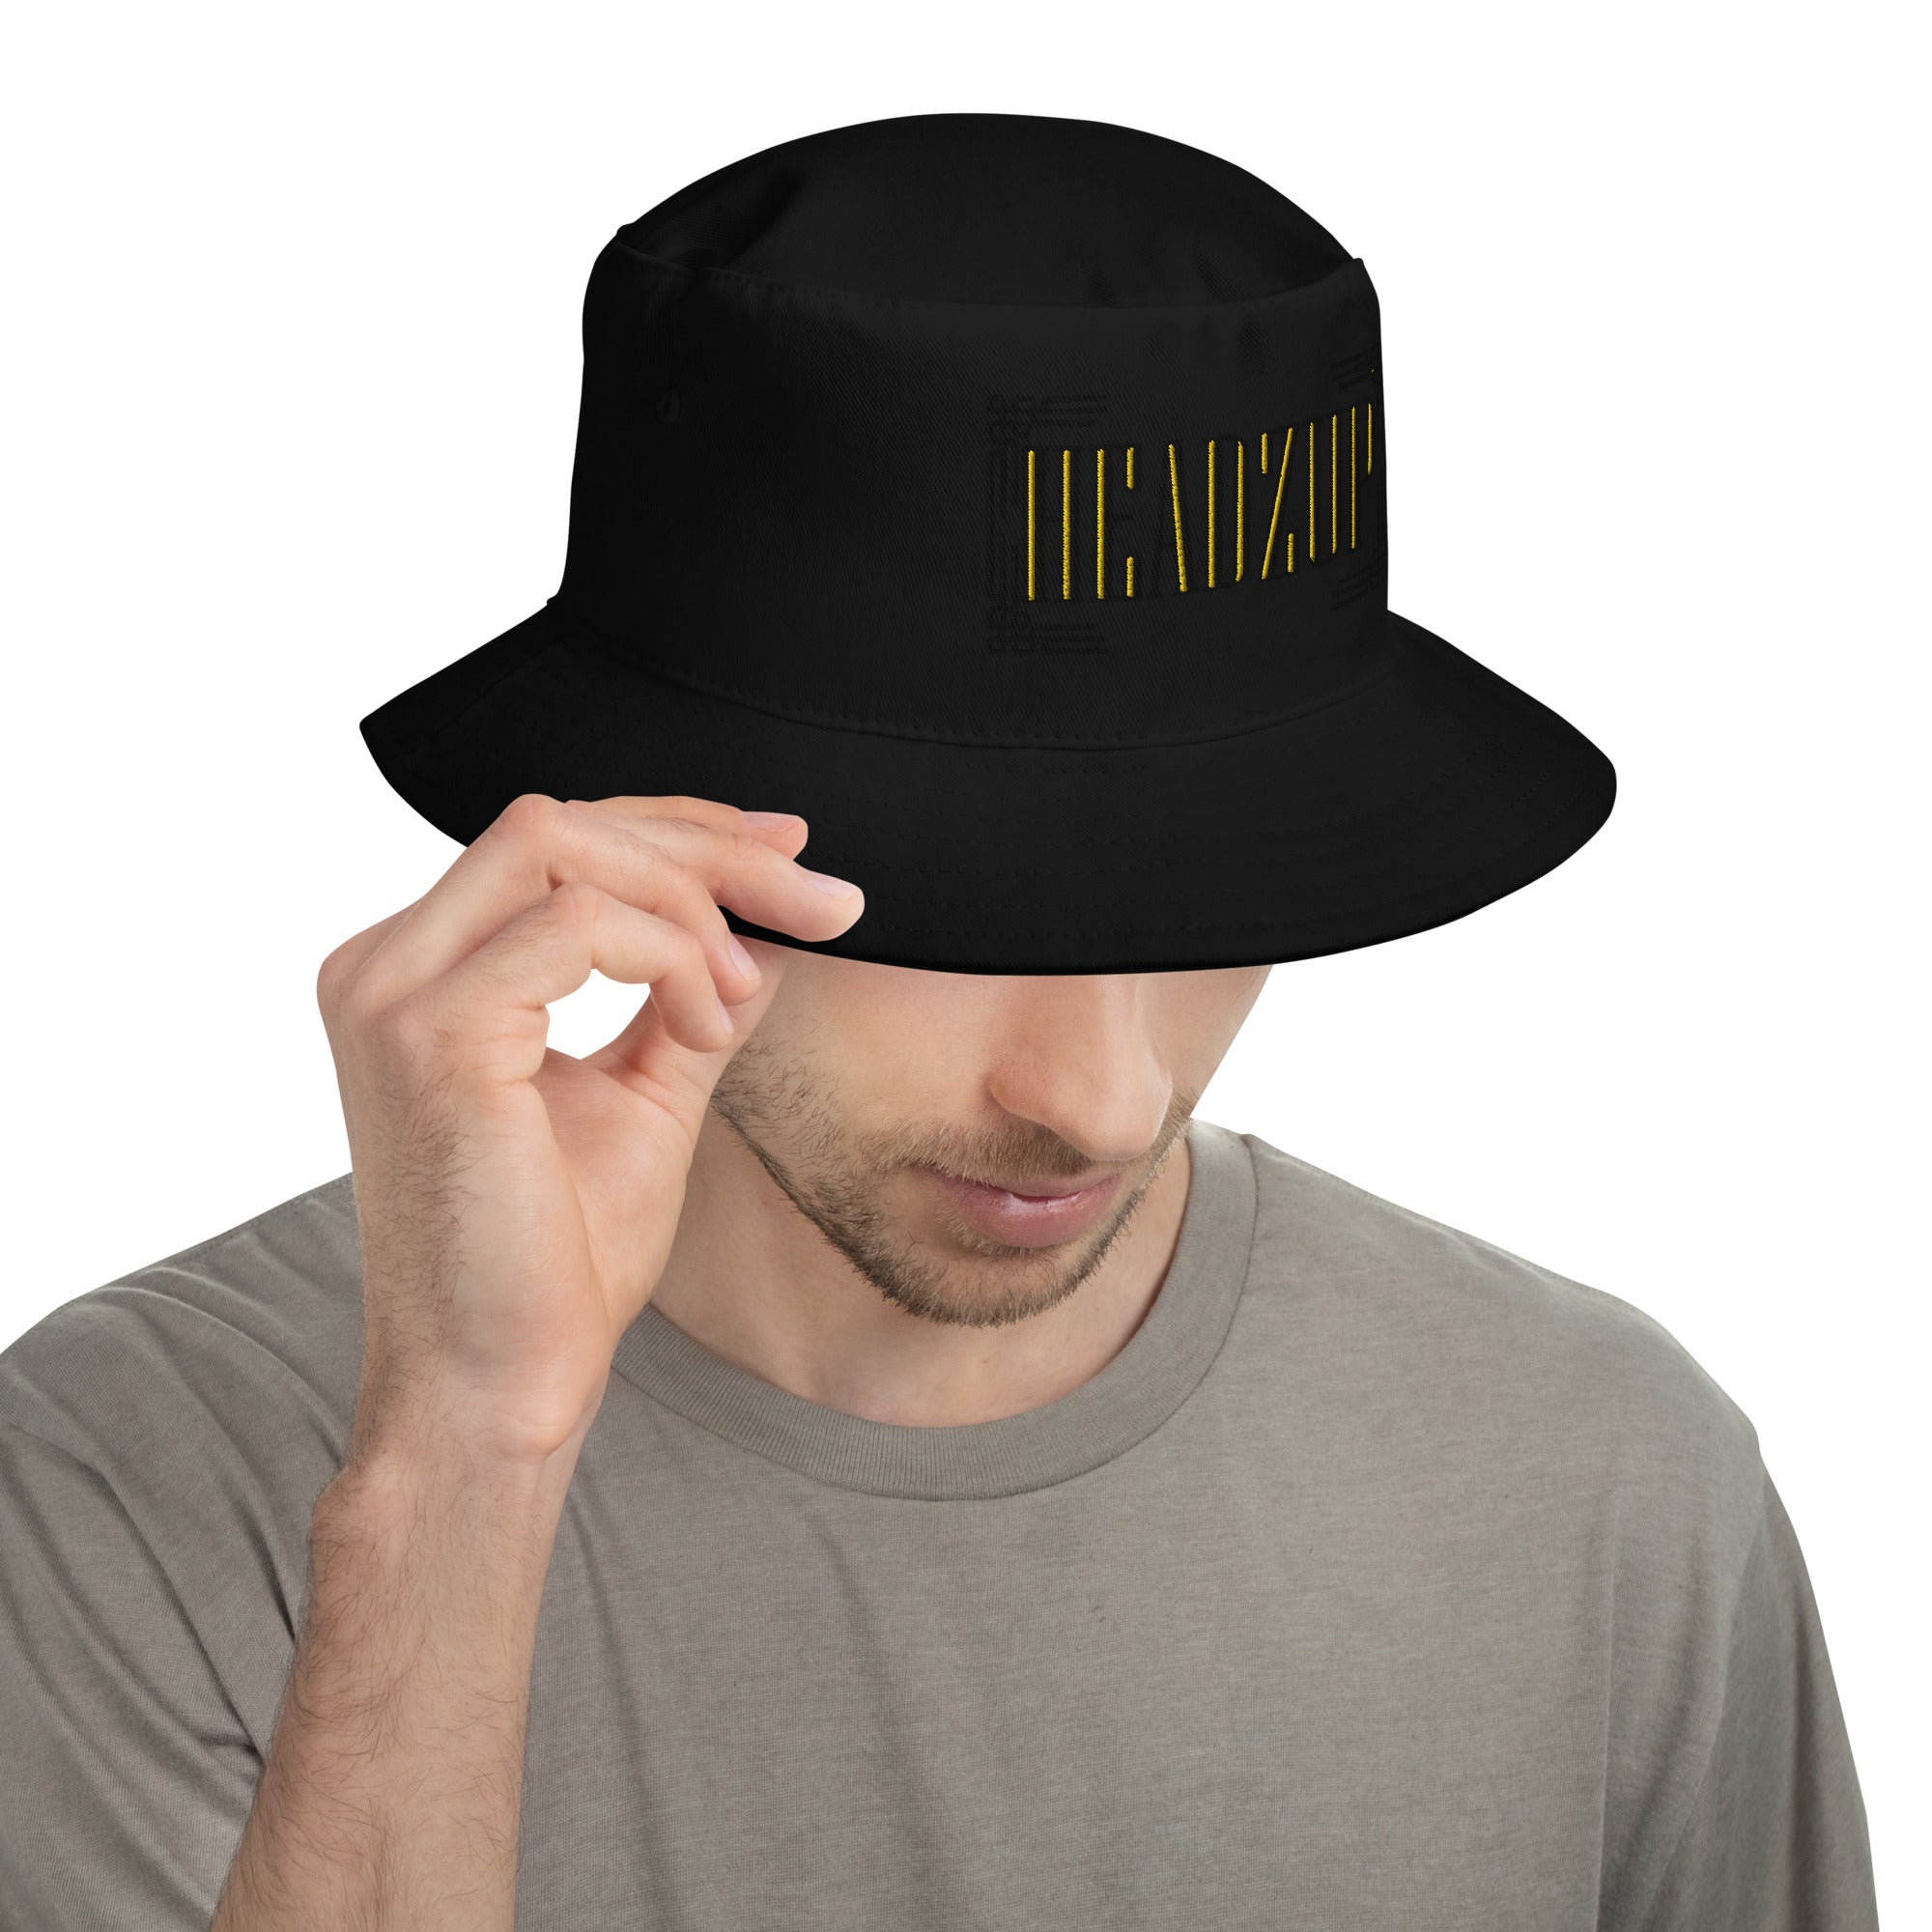 Bucket Hat – Headzup Barbershop